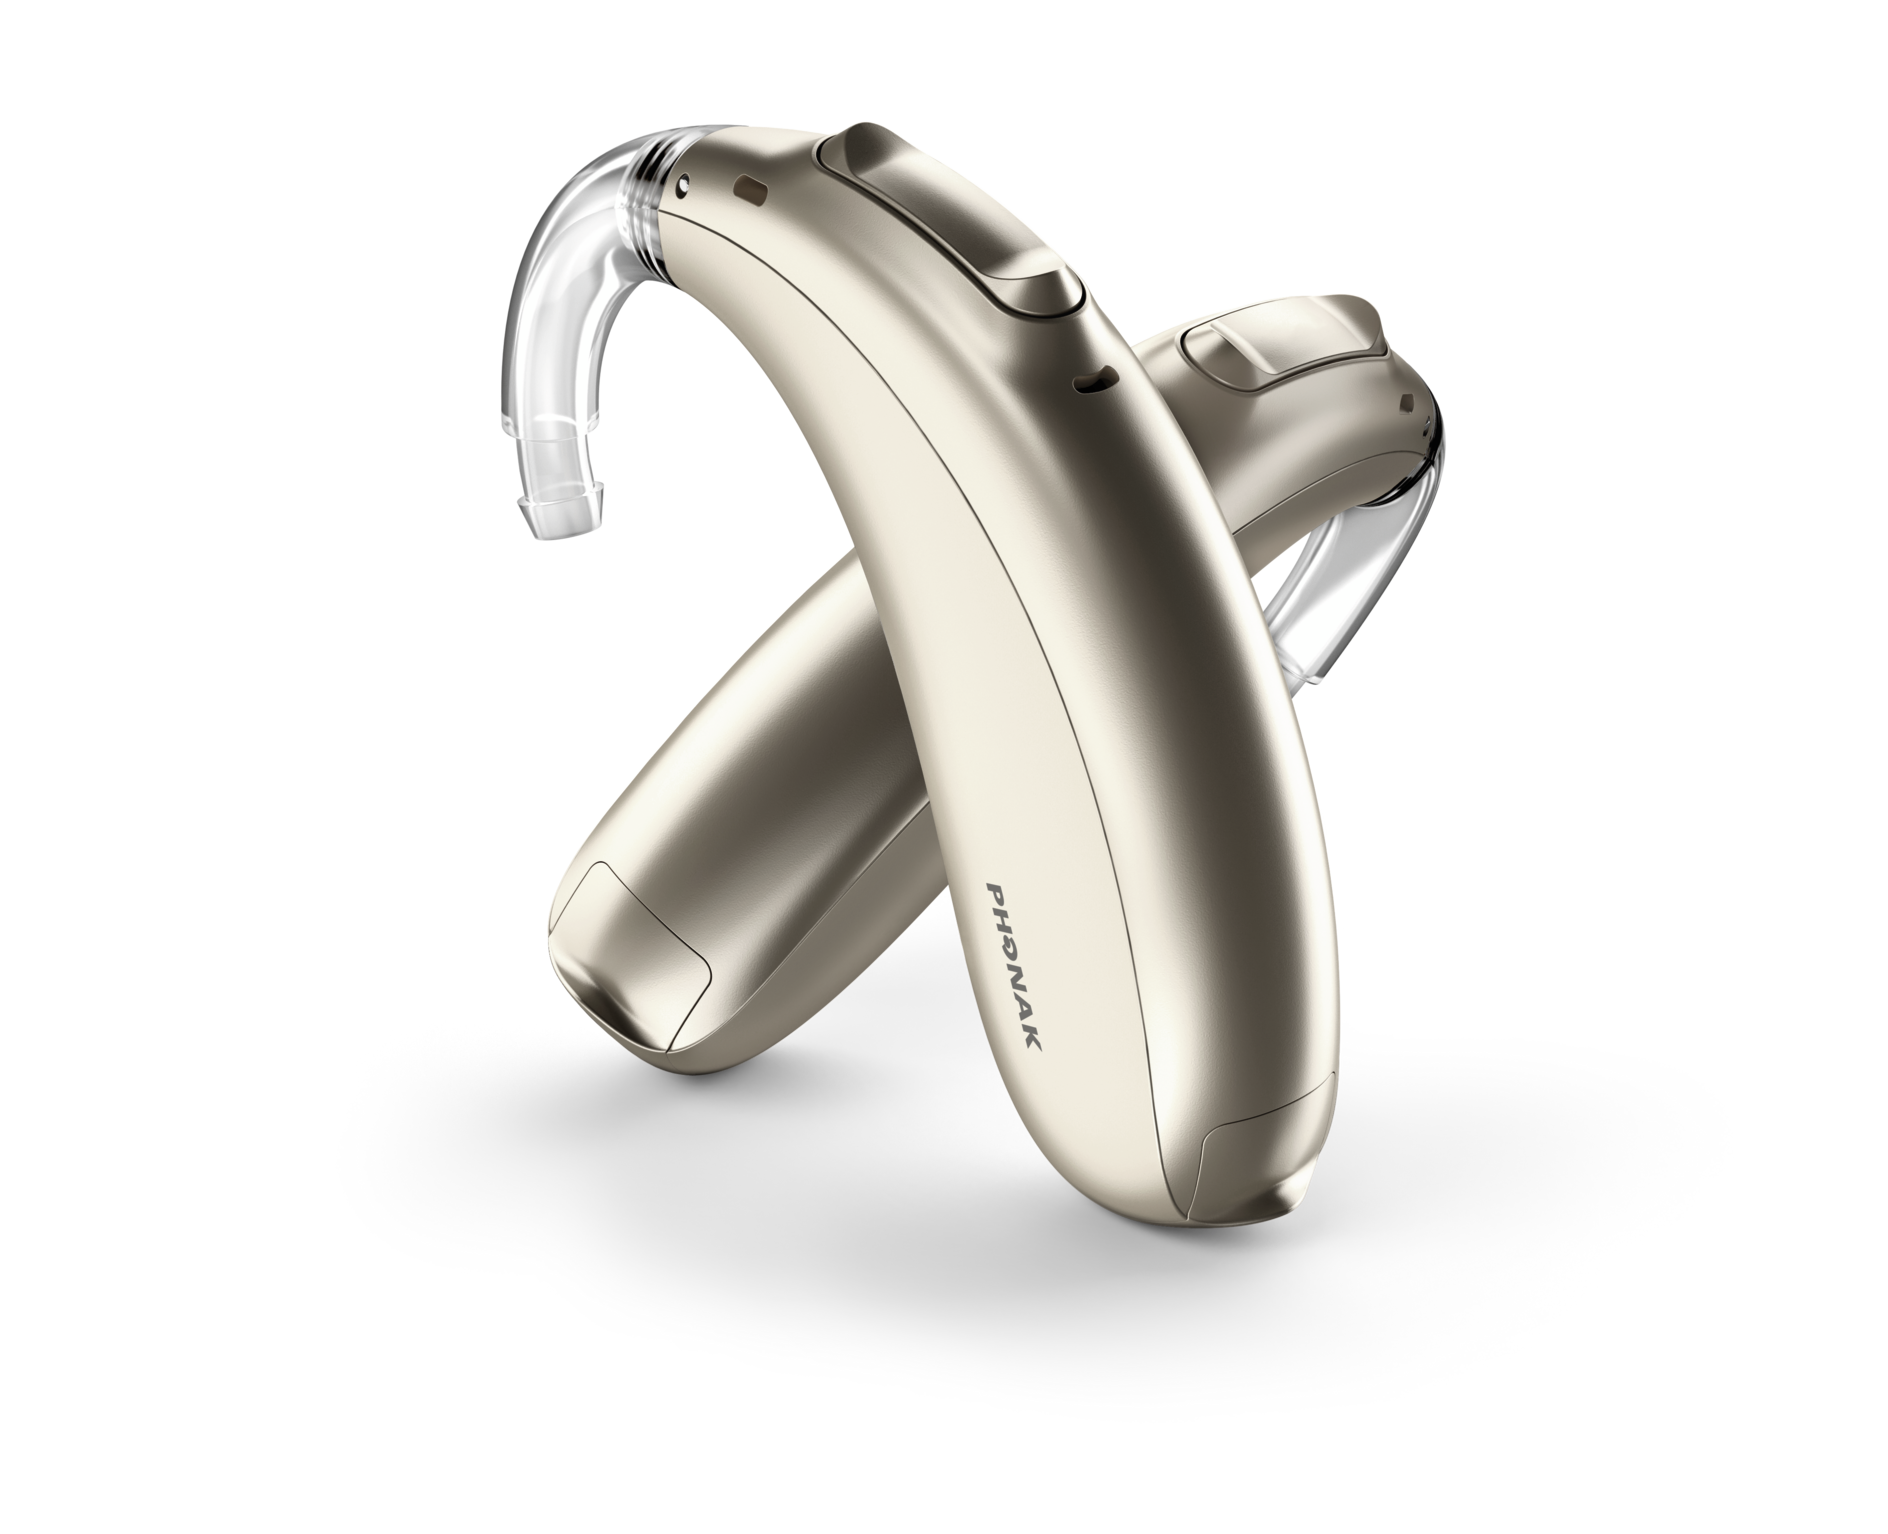 Phonak Naída M-SP hearing aids